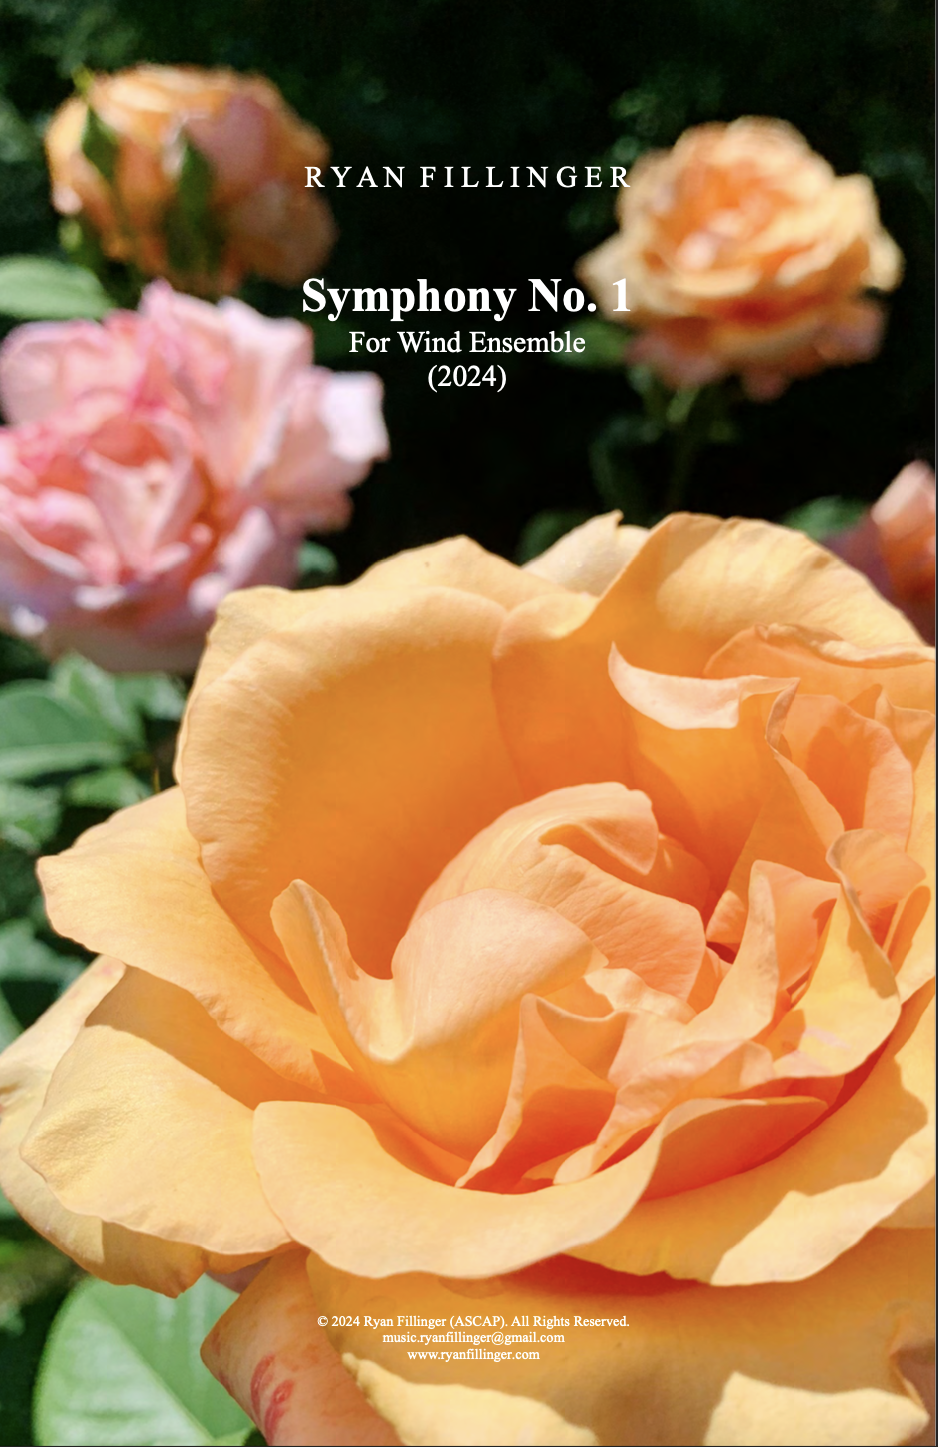 Symphony No. 1 by Ryan Fillinger